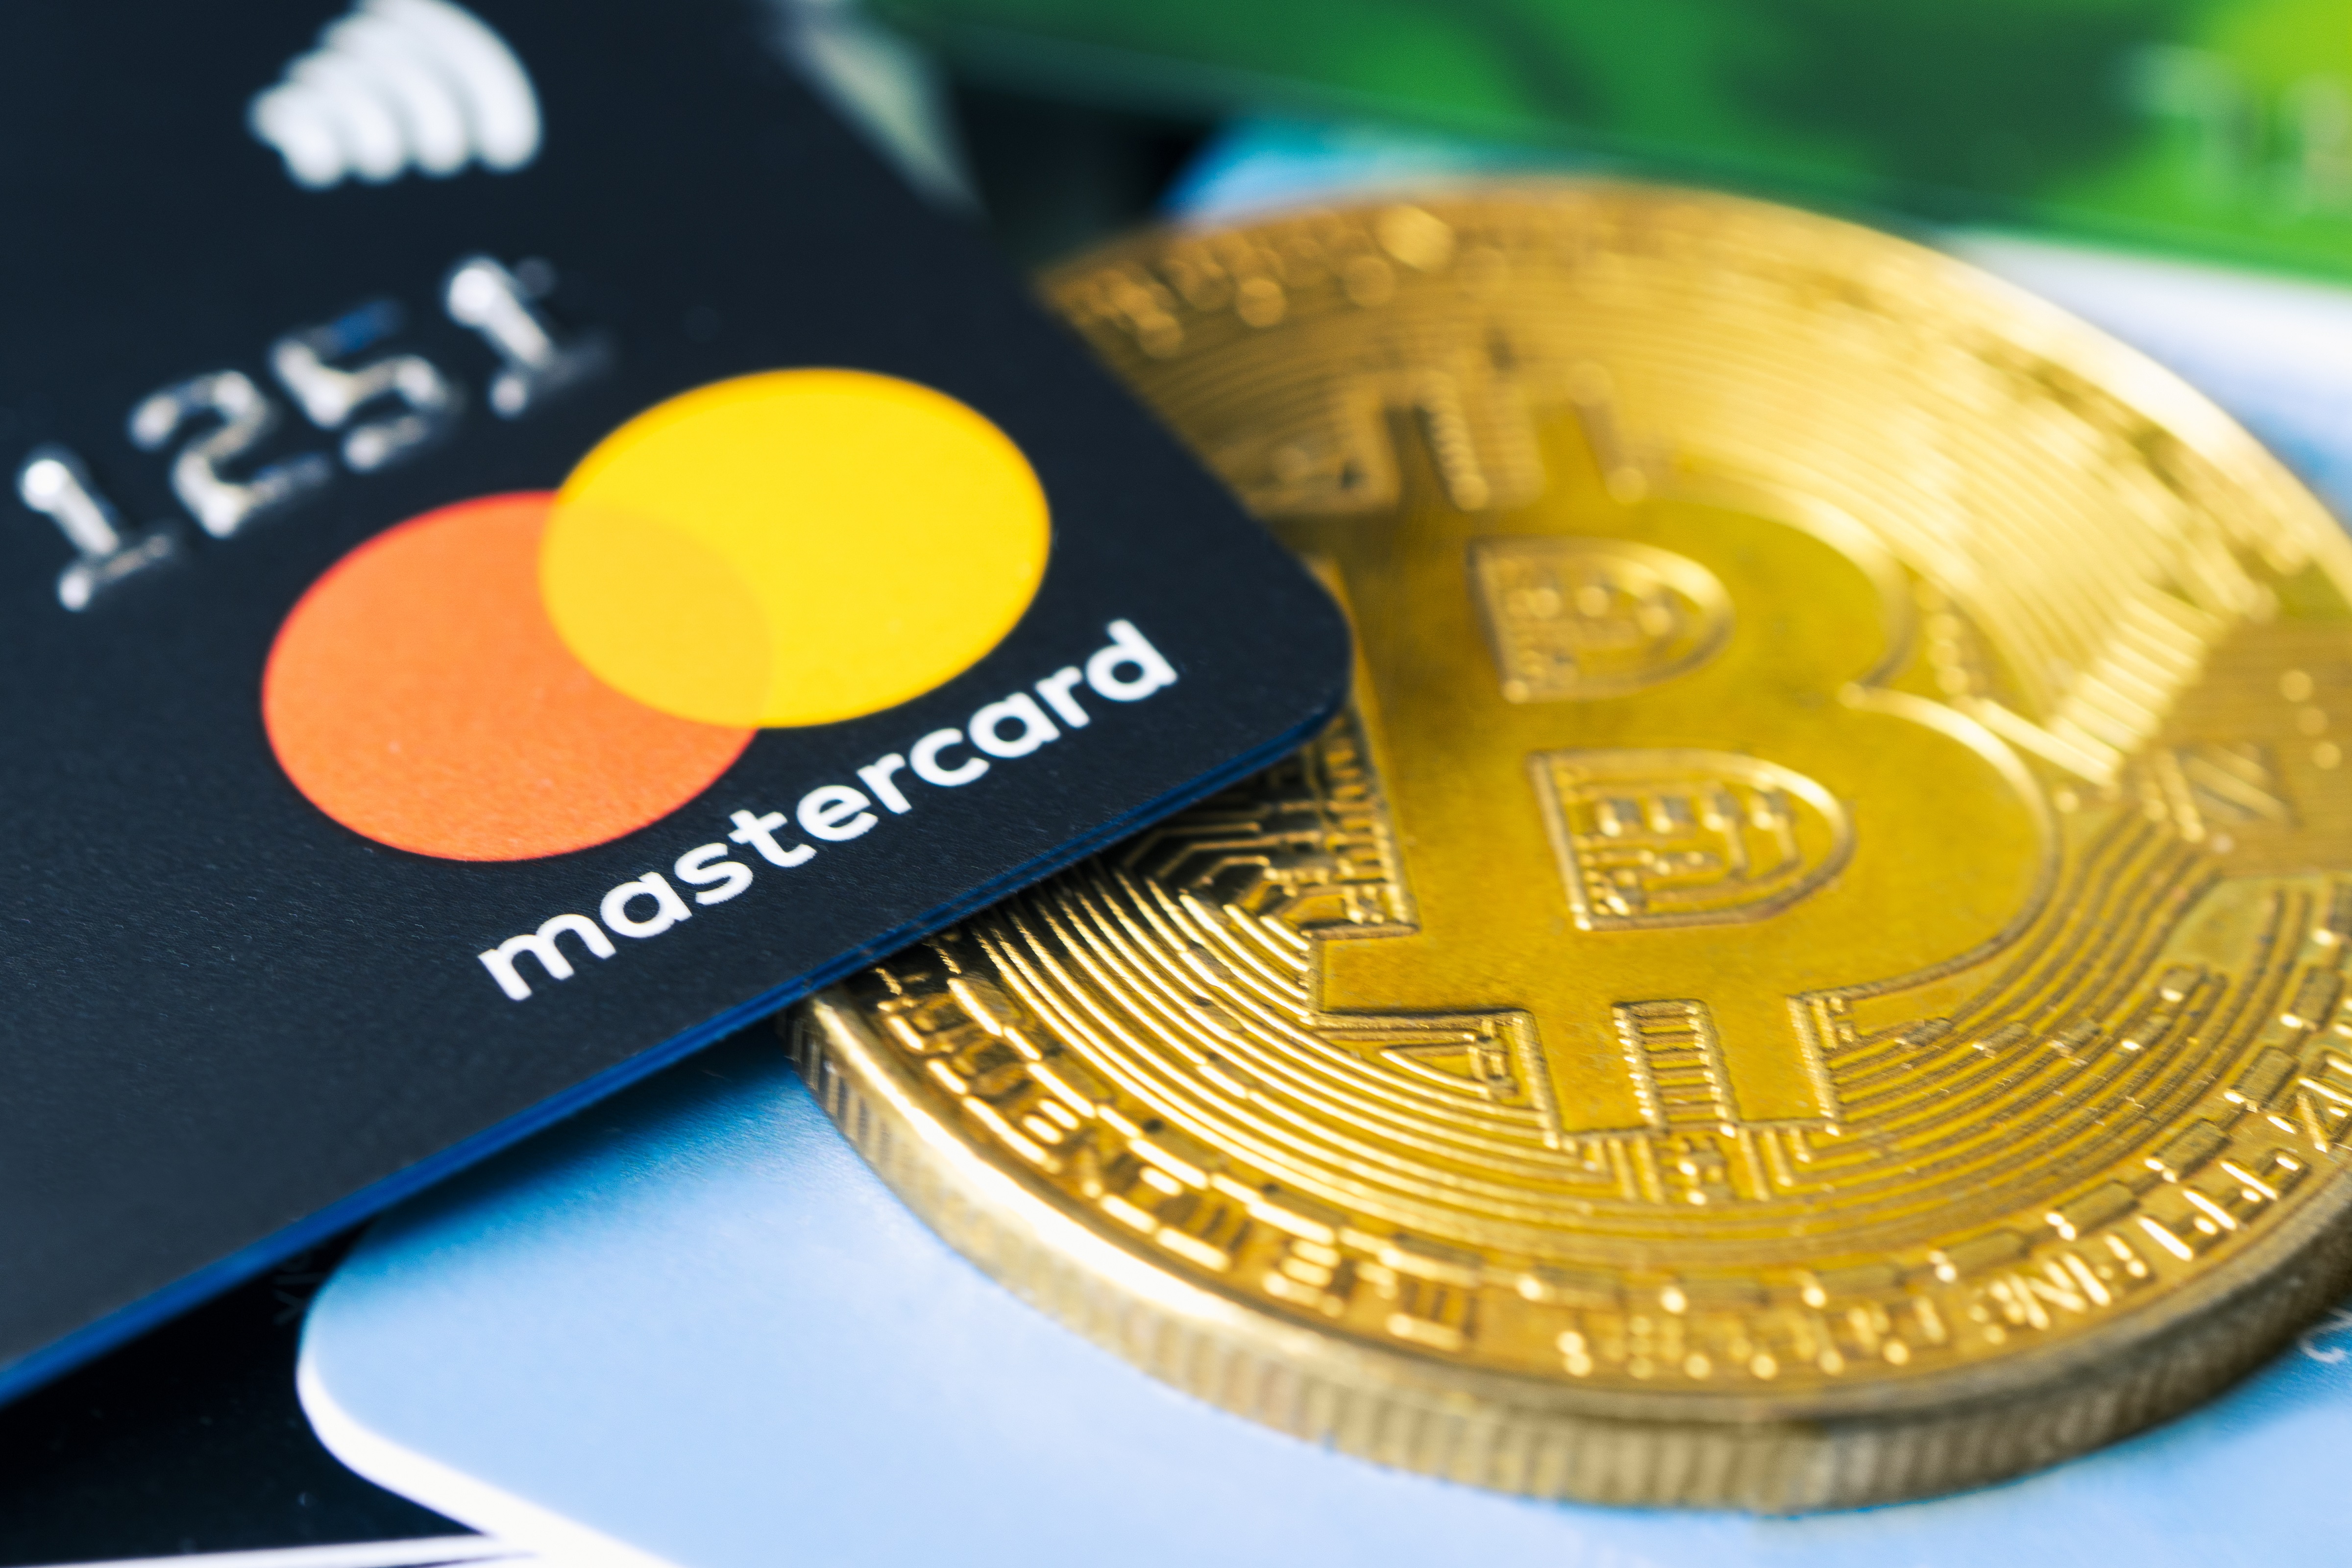 Mastercard integra Bitcoin nella rete globale dei pagamenti